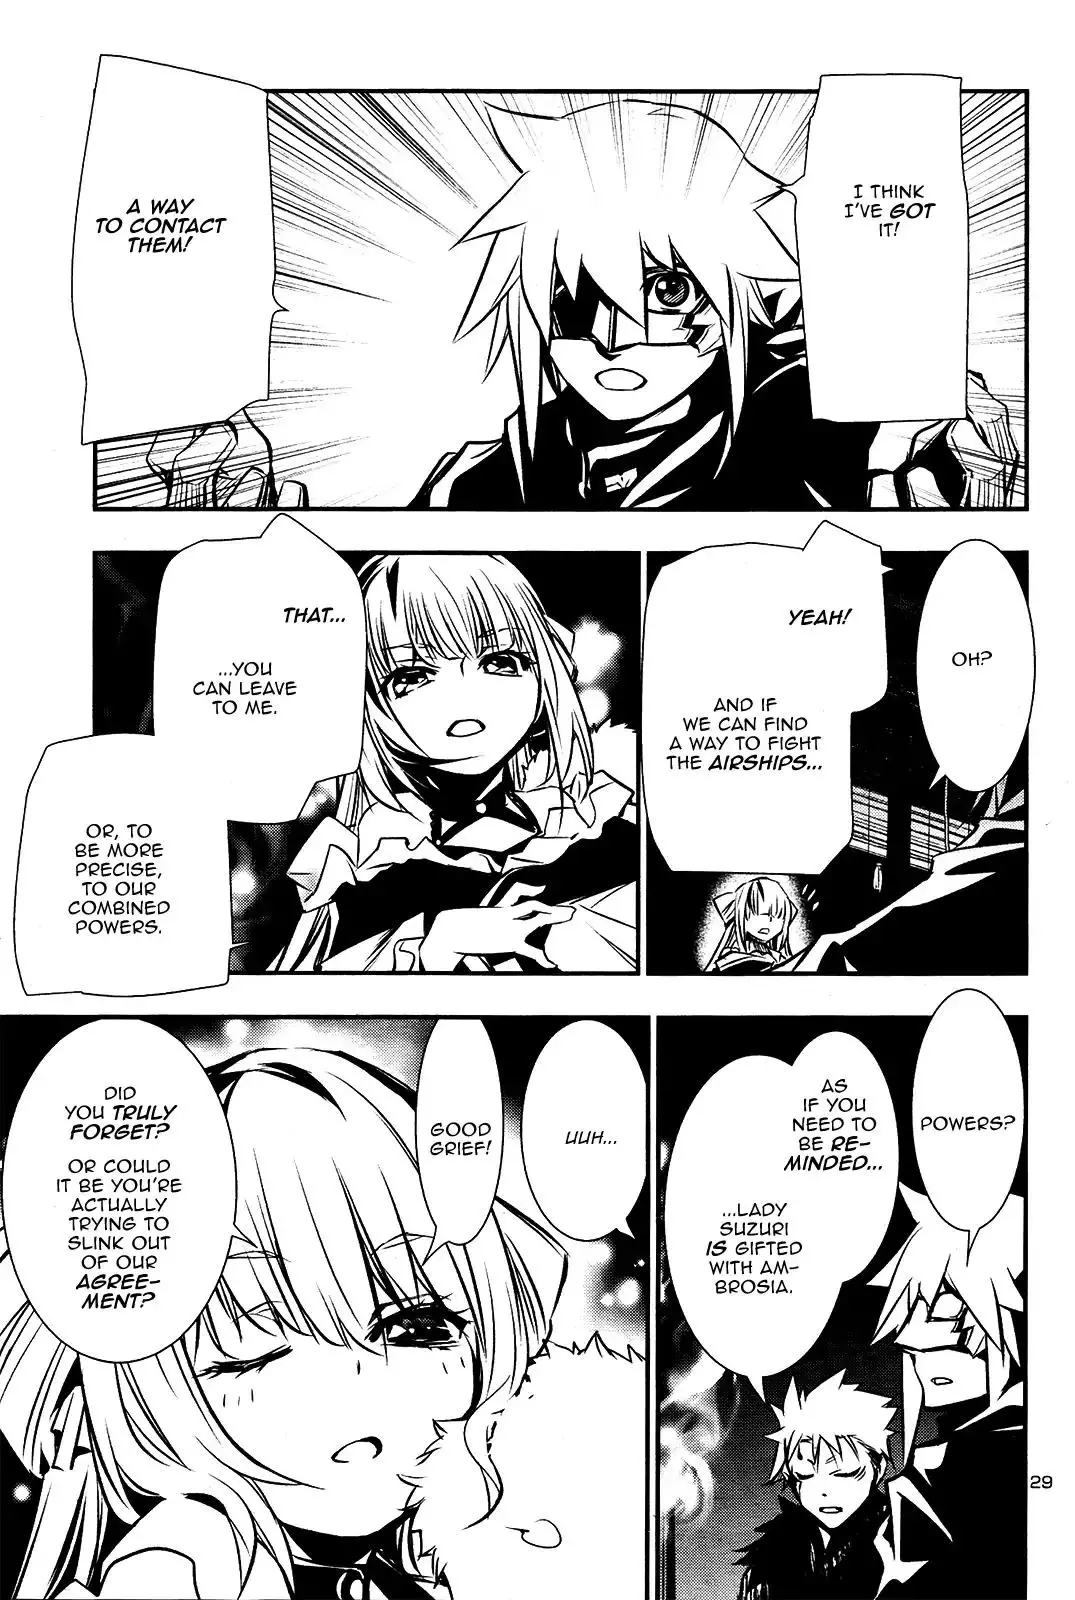 Shinju no Nectar - 27 page 27